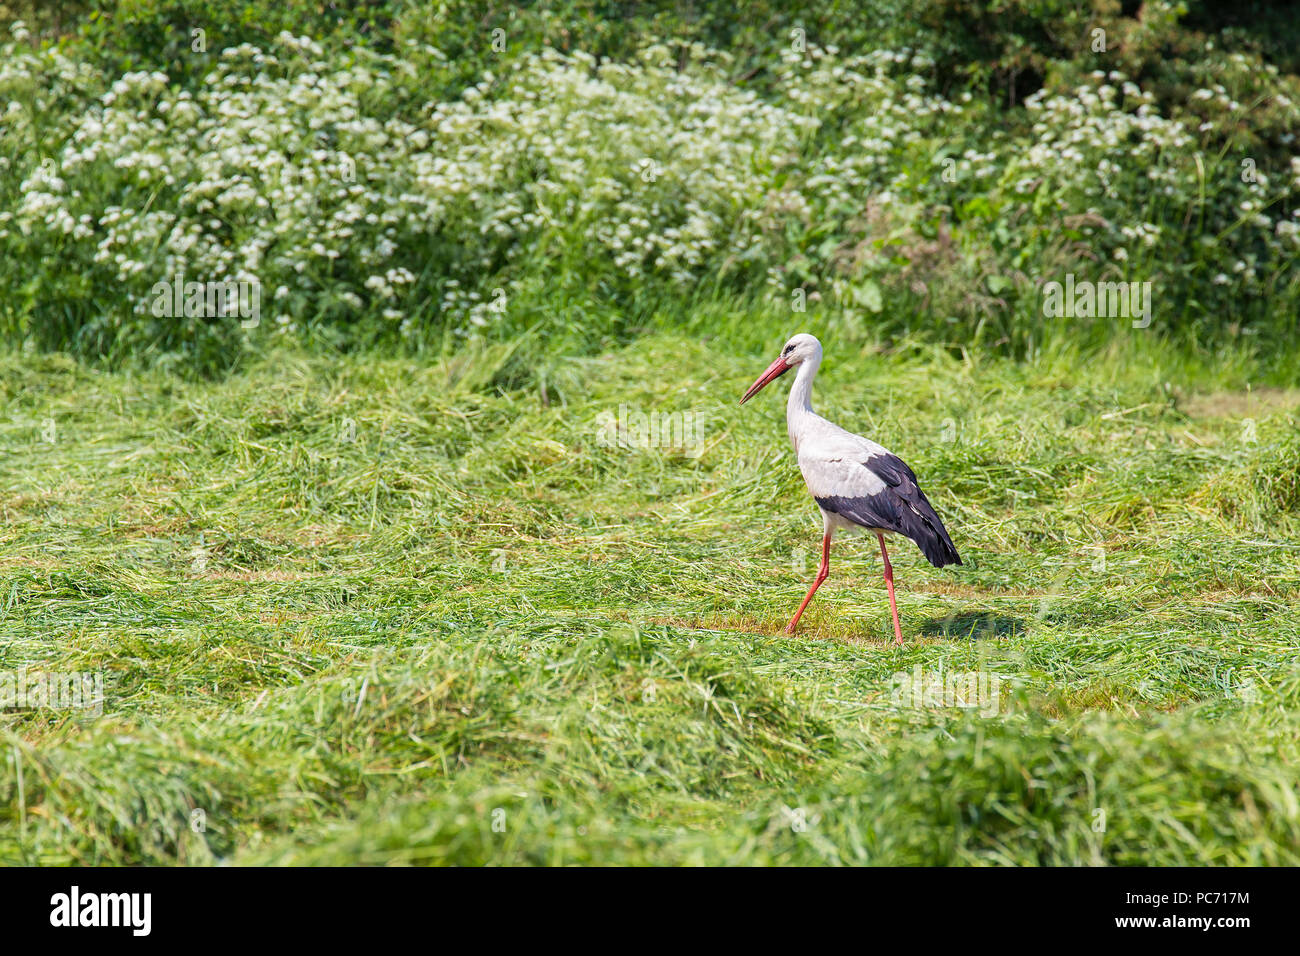 Stork cerca cibo nel falciare l'erba verde Foto Stock